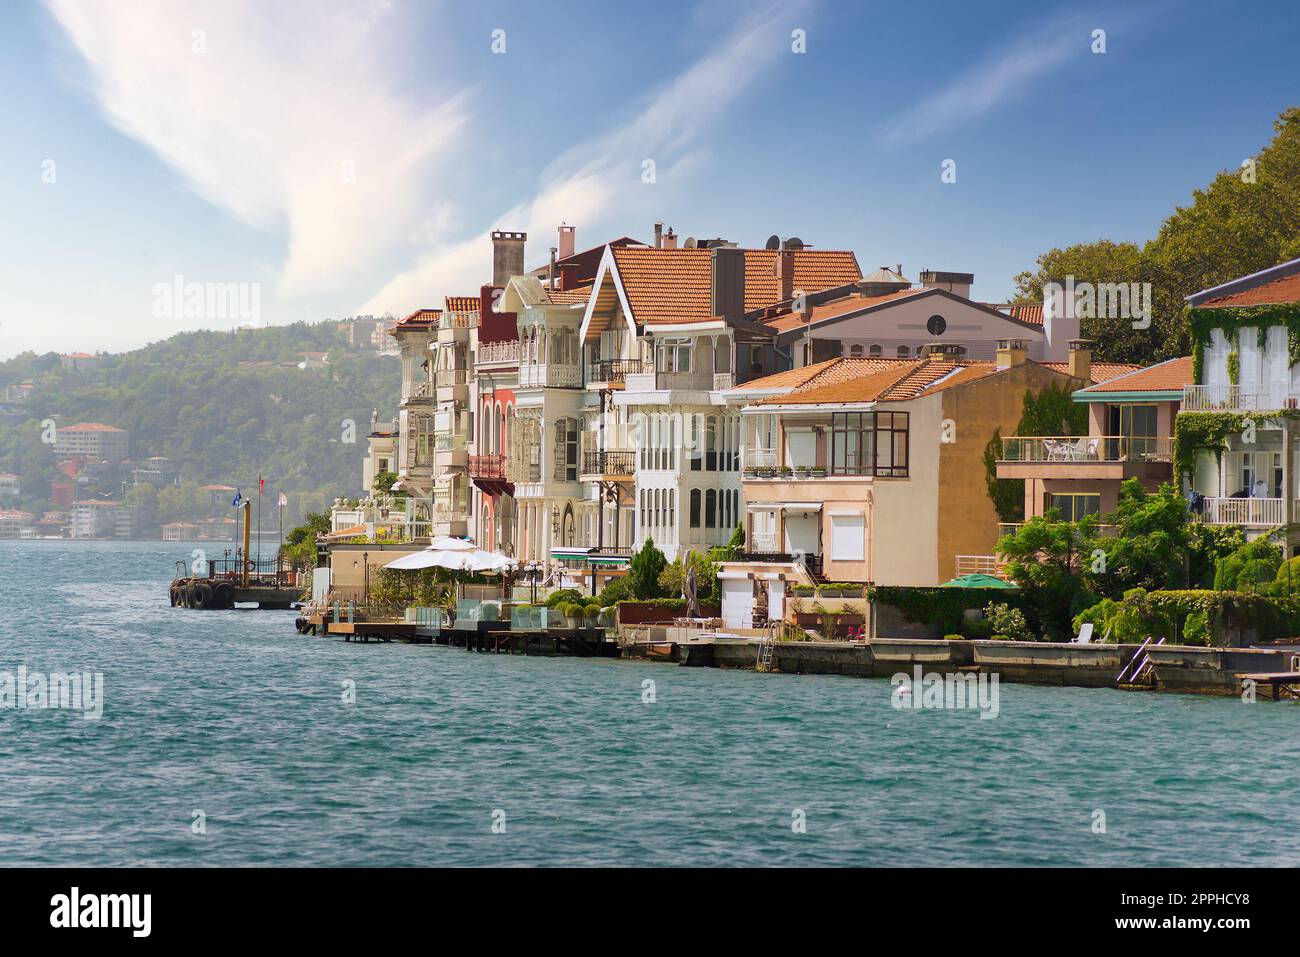 Casas tradicionales del lado europeo del estrecho del Bósforo, Estambul, Turquía, con el fondo de las montañas verdes Foto de stock